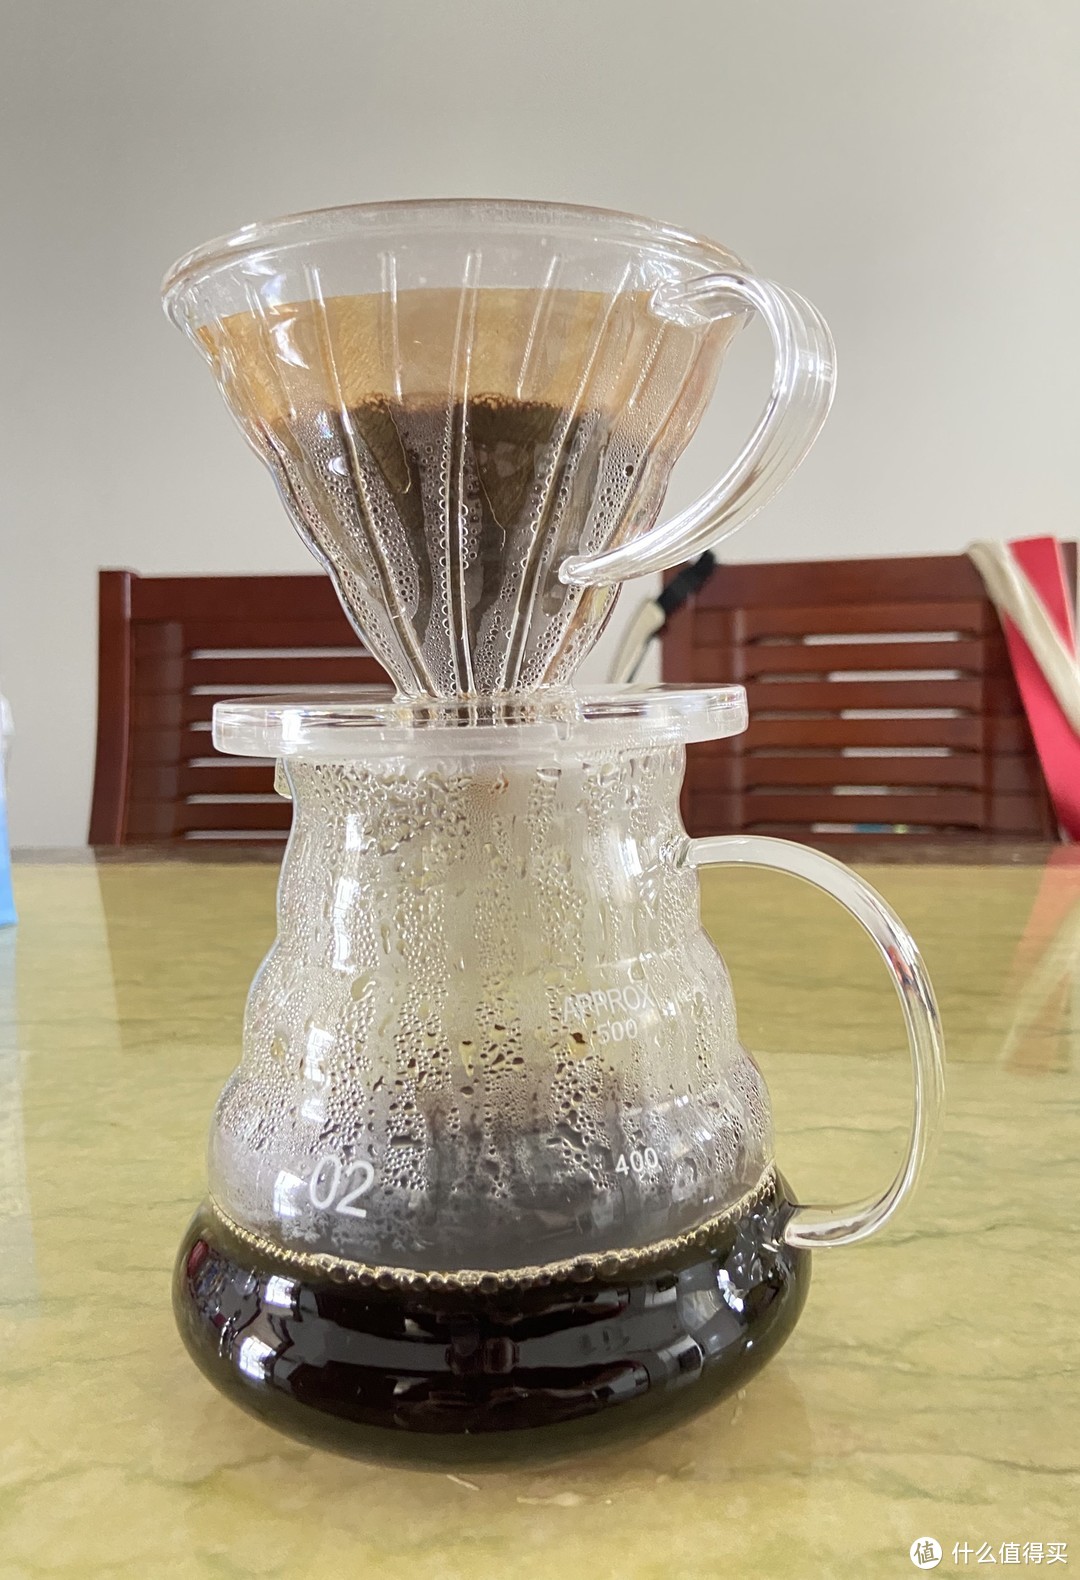 CLITON电动咖啡磨豆机：清晨第一缕阳光的标配